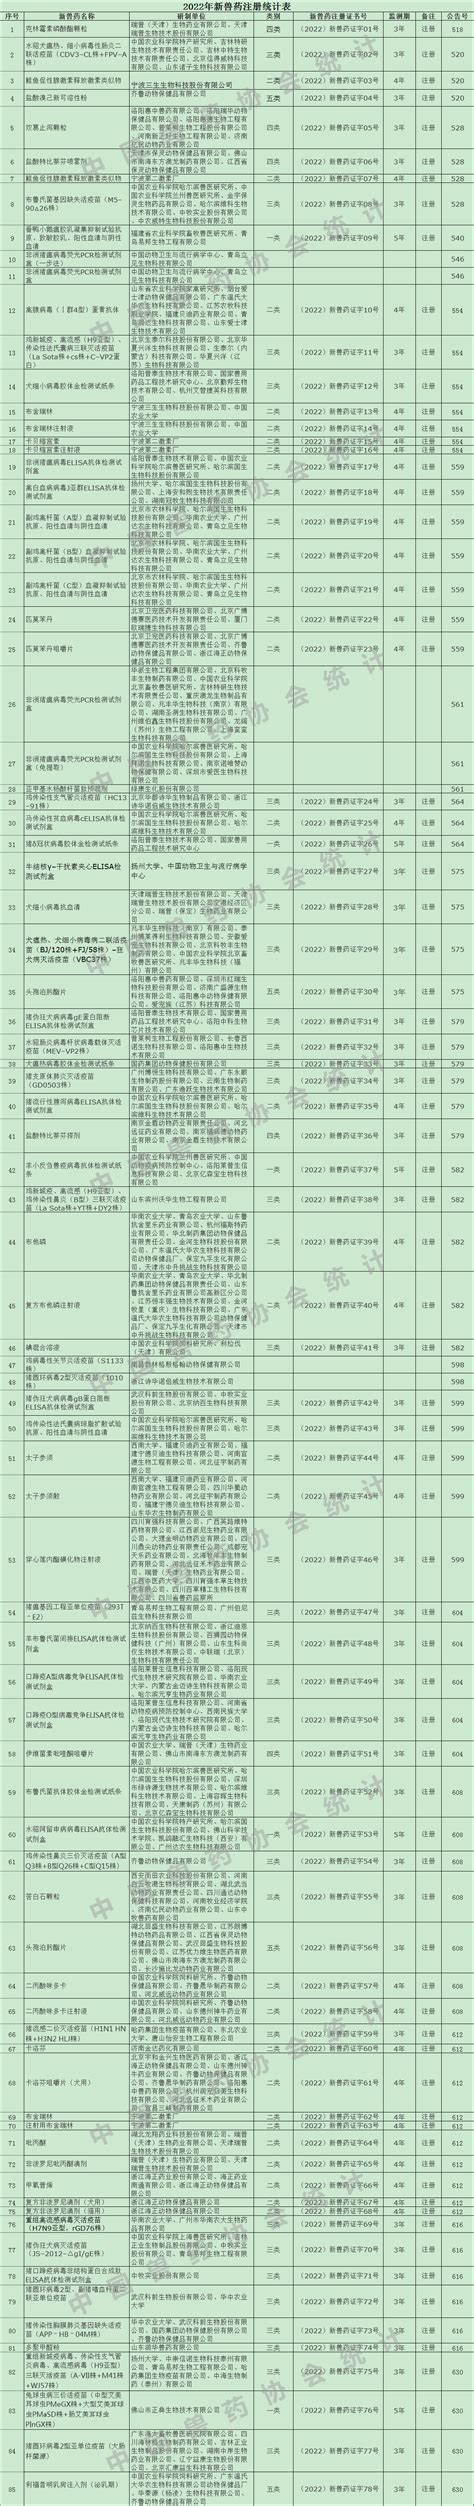 2018年进口注册兽药数据 | 中国动物保健·官网